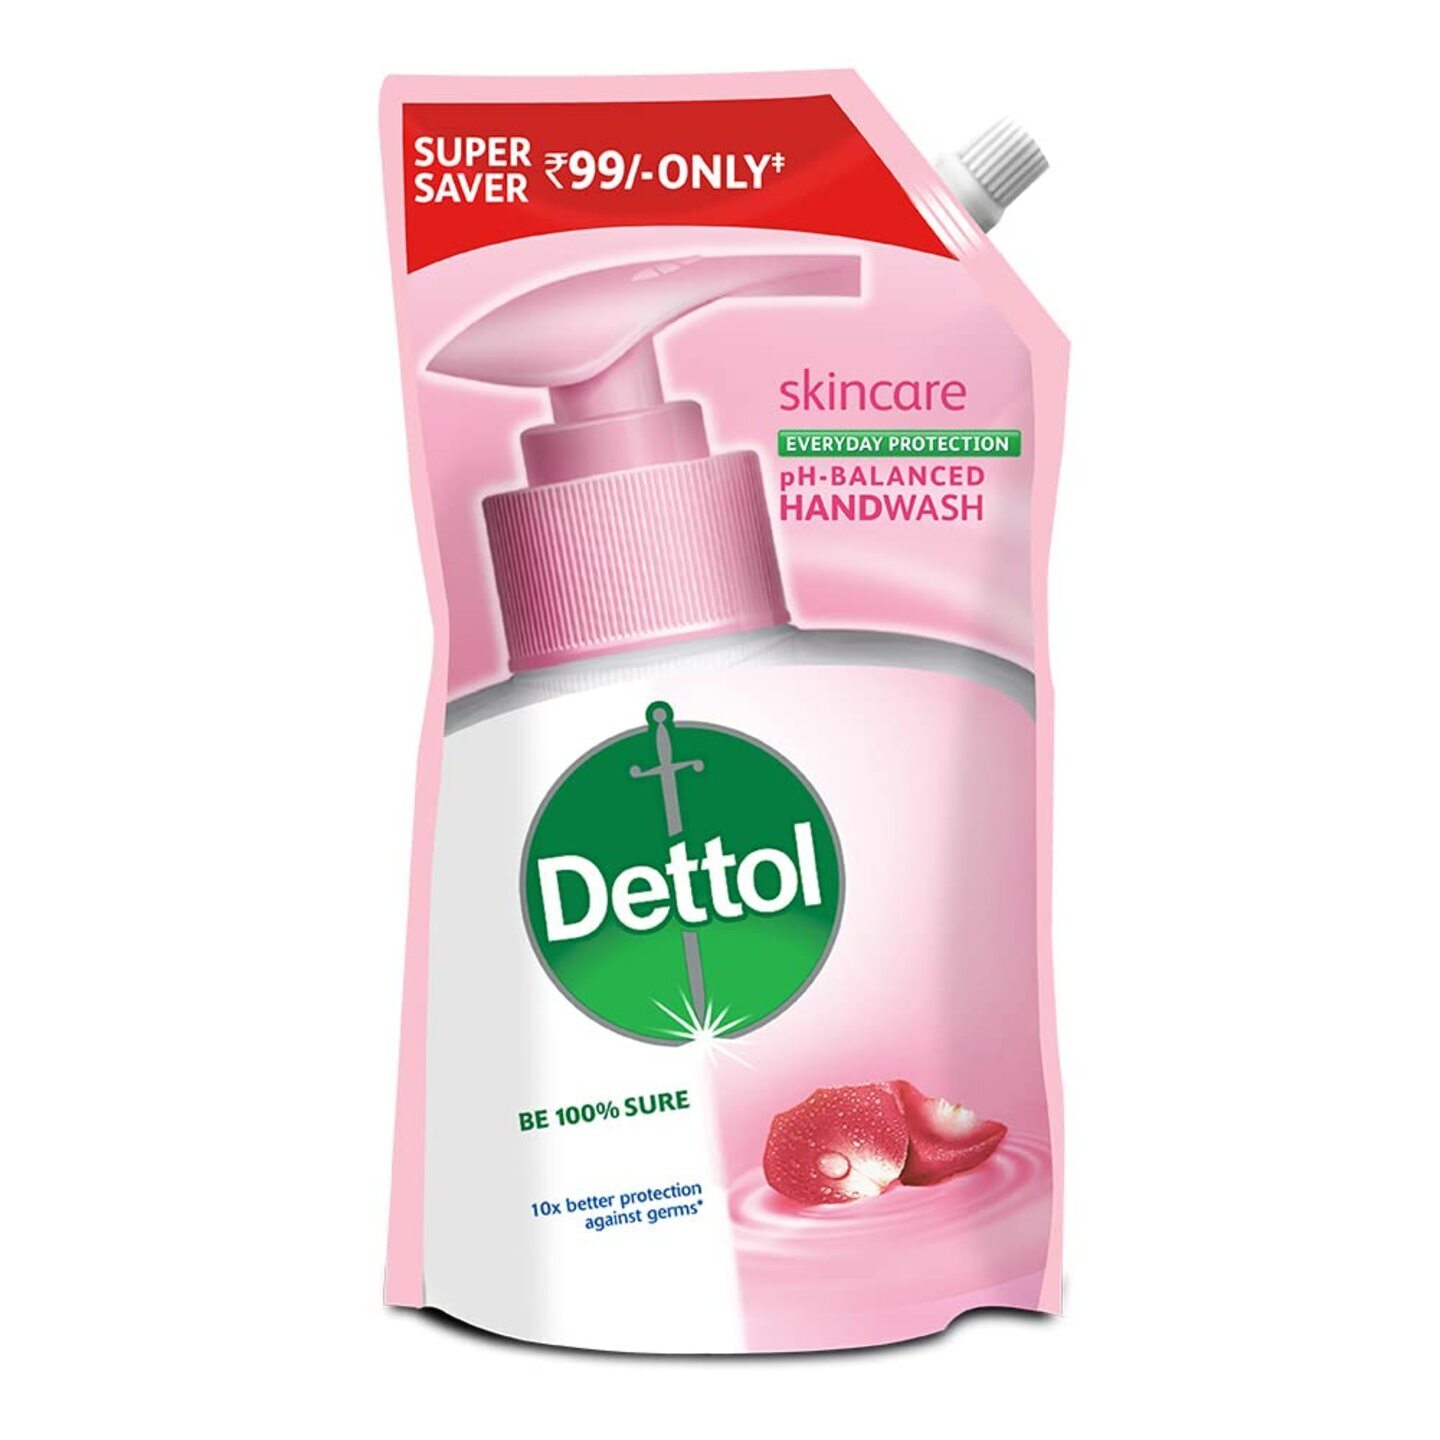 Dettol Skincare Liquid Handwash - 675ml Super saver pack